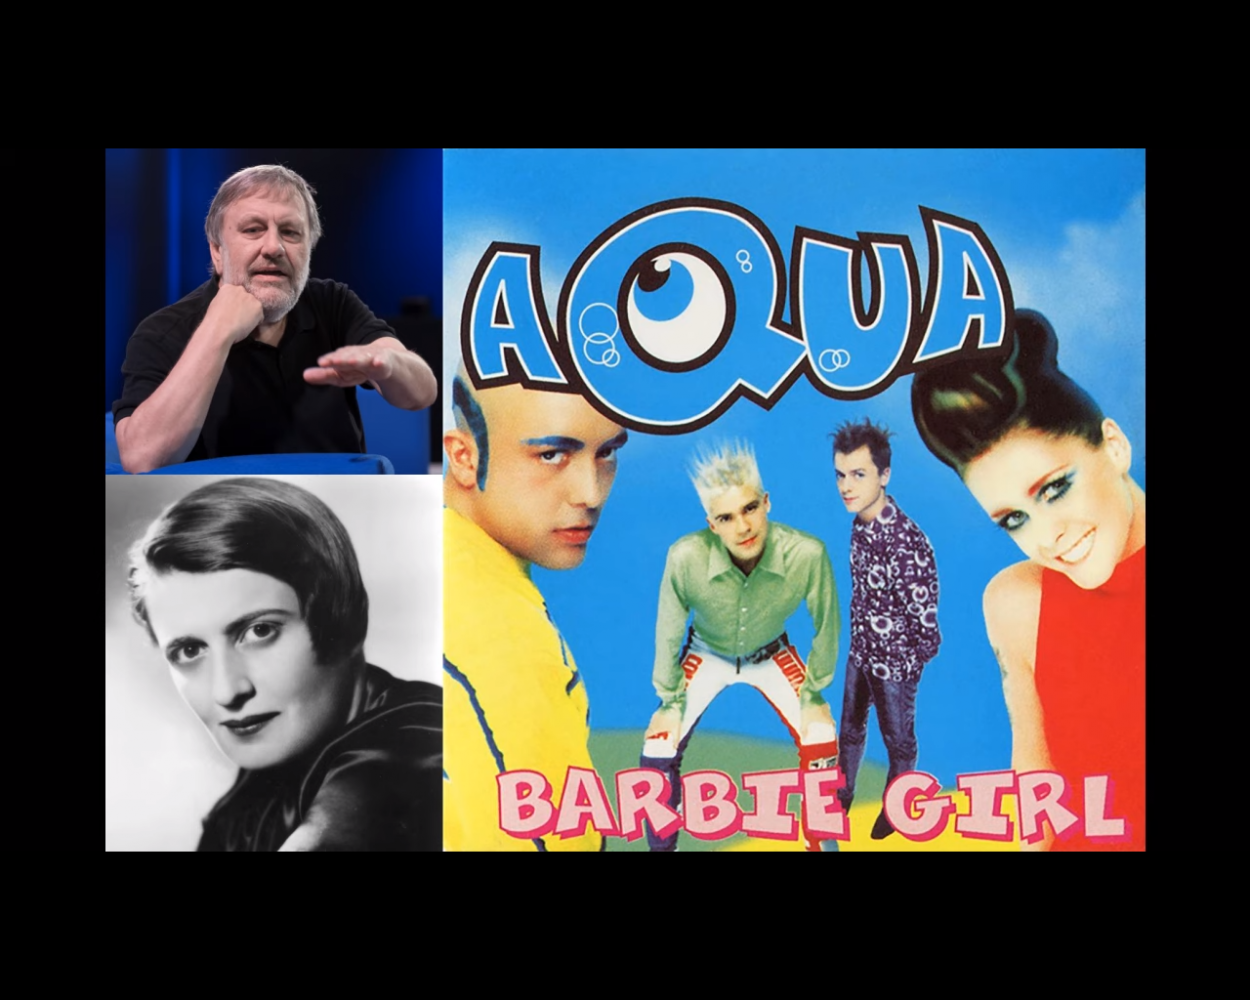 Die Autoren Slavoj Žižek und Ayn Rand sprechen den Aqua-Hit "Barbie Girl" ein